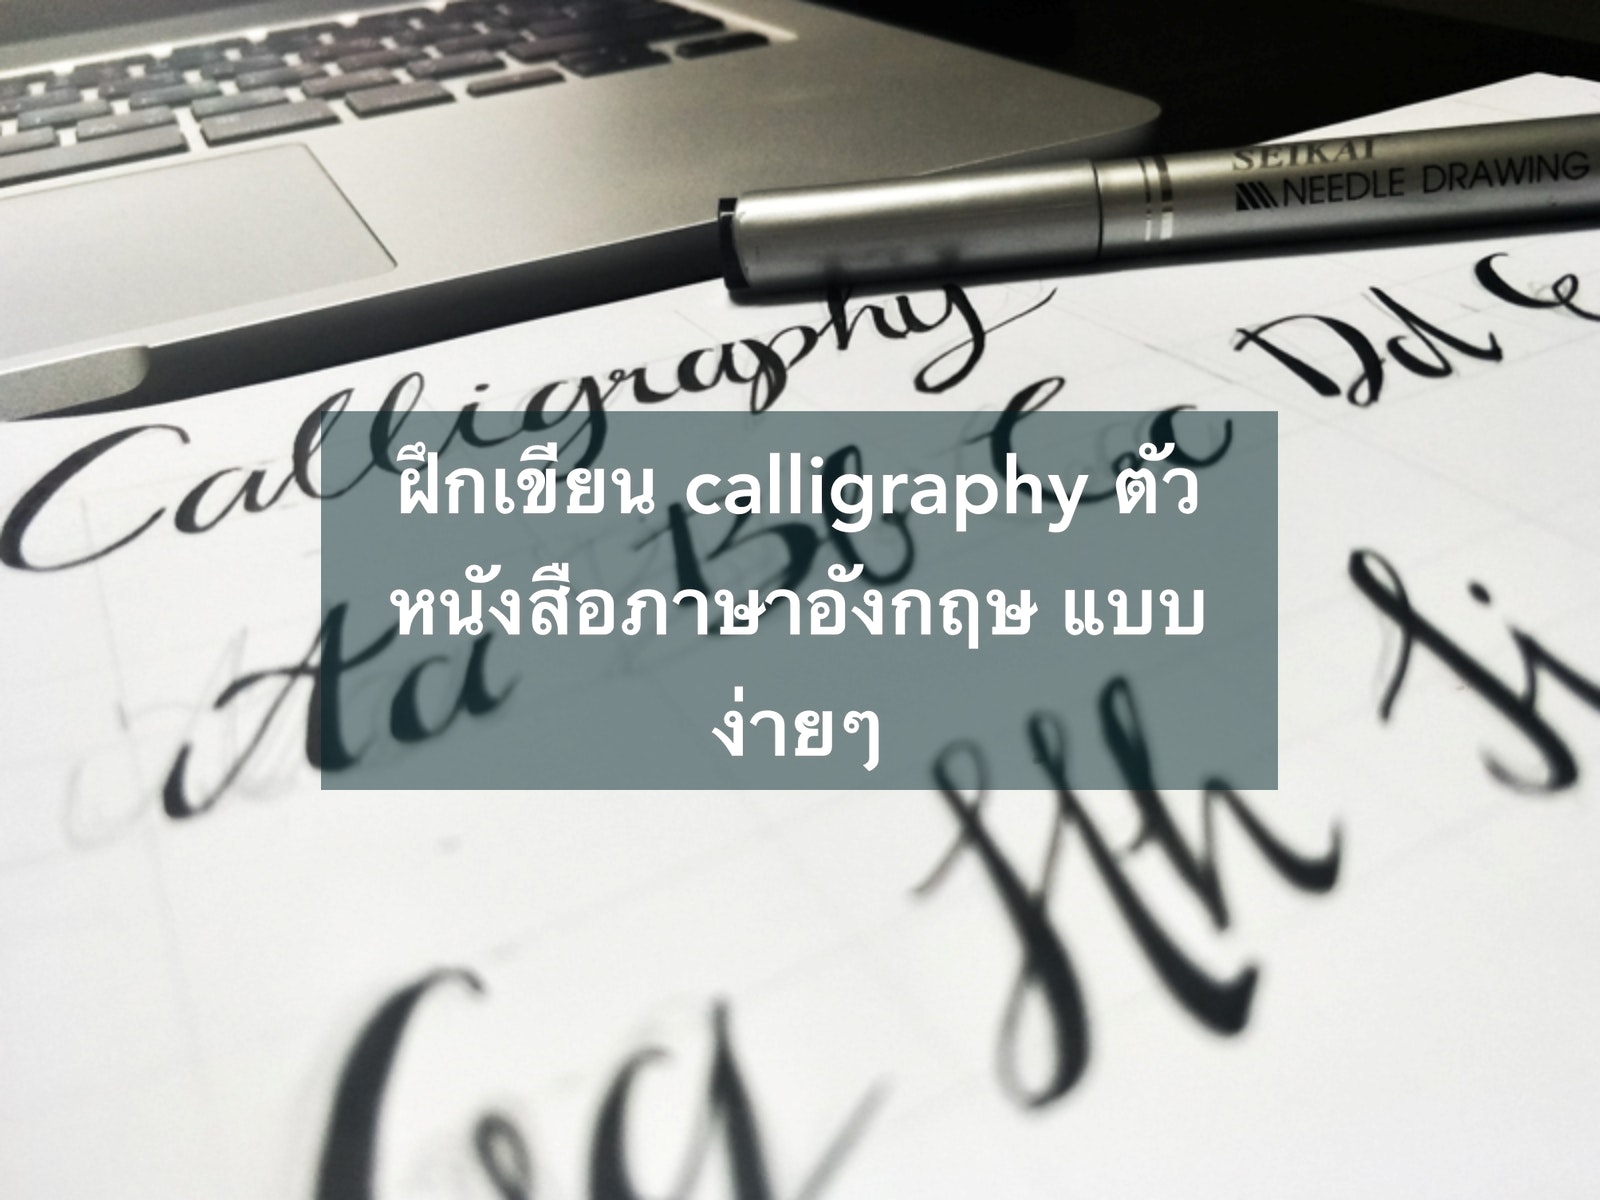 ฝึกเขียน Calligraphy ตัวหนังสือภาษาอังกฤษ แบบง่ายๆ | Trueid Creator